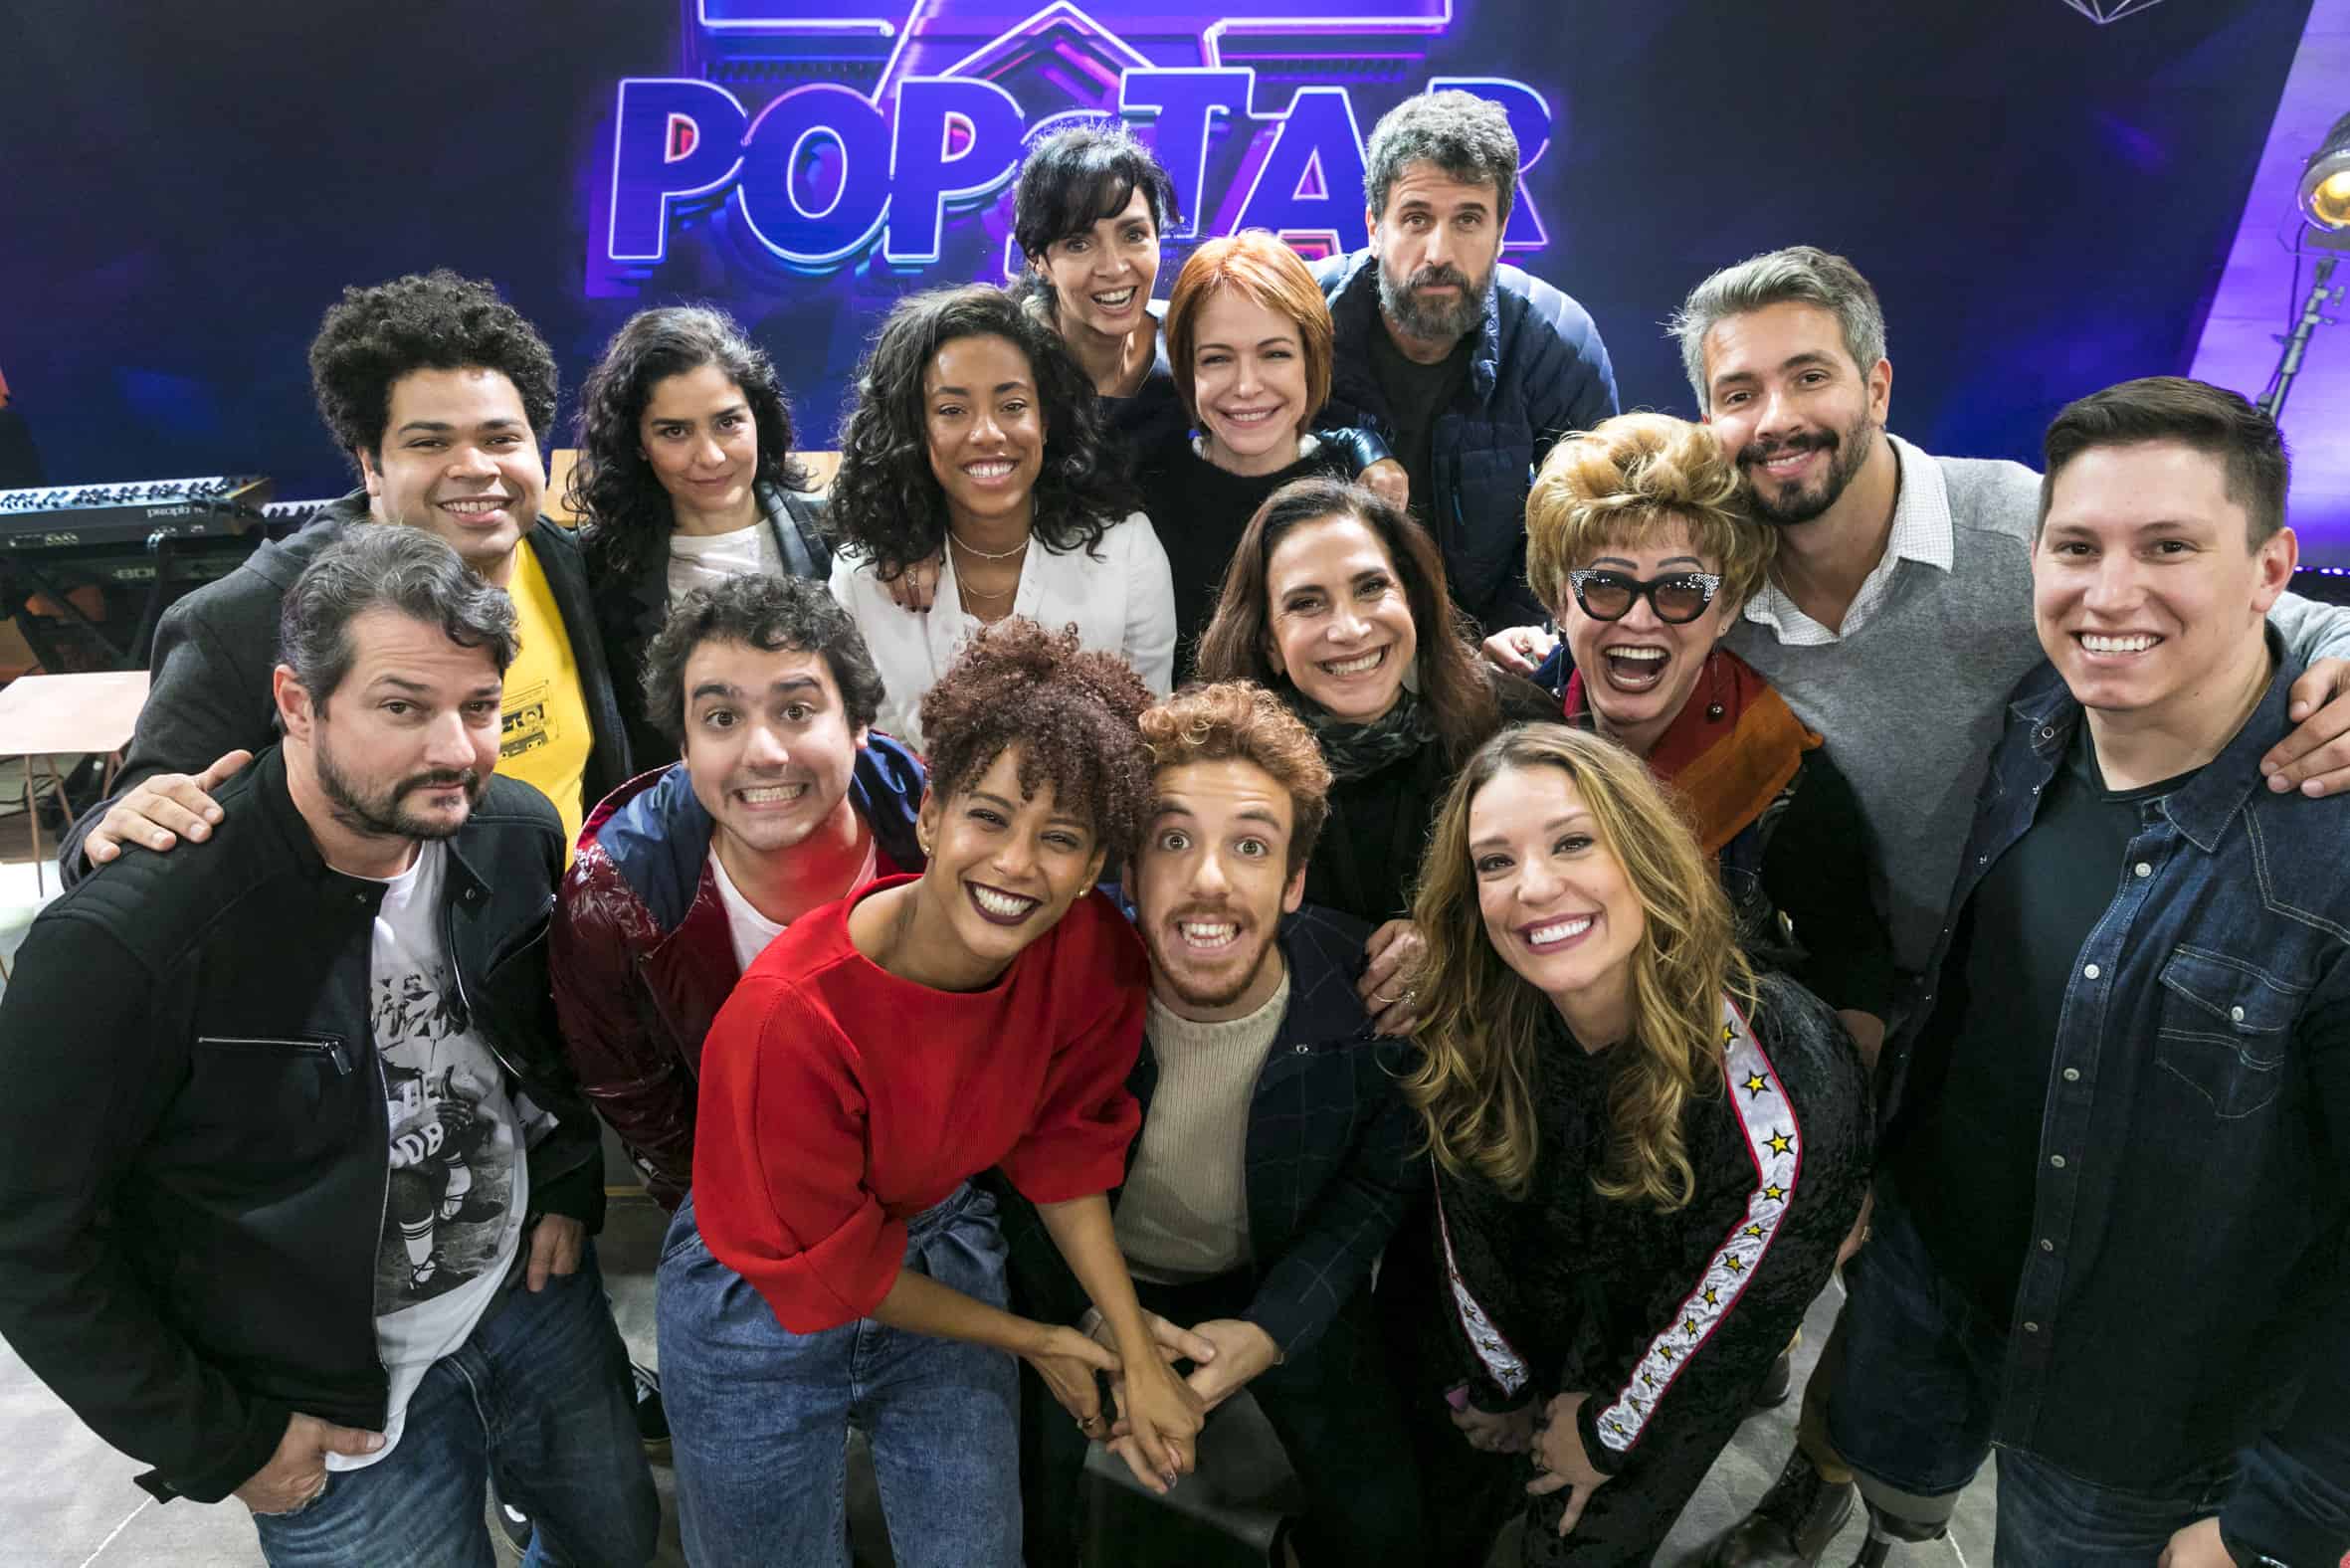 Participantes falam sobre expectativa para a terceira temporada do “PopStar”